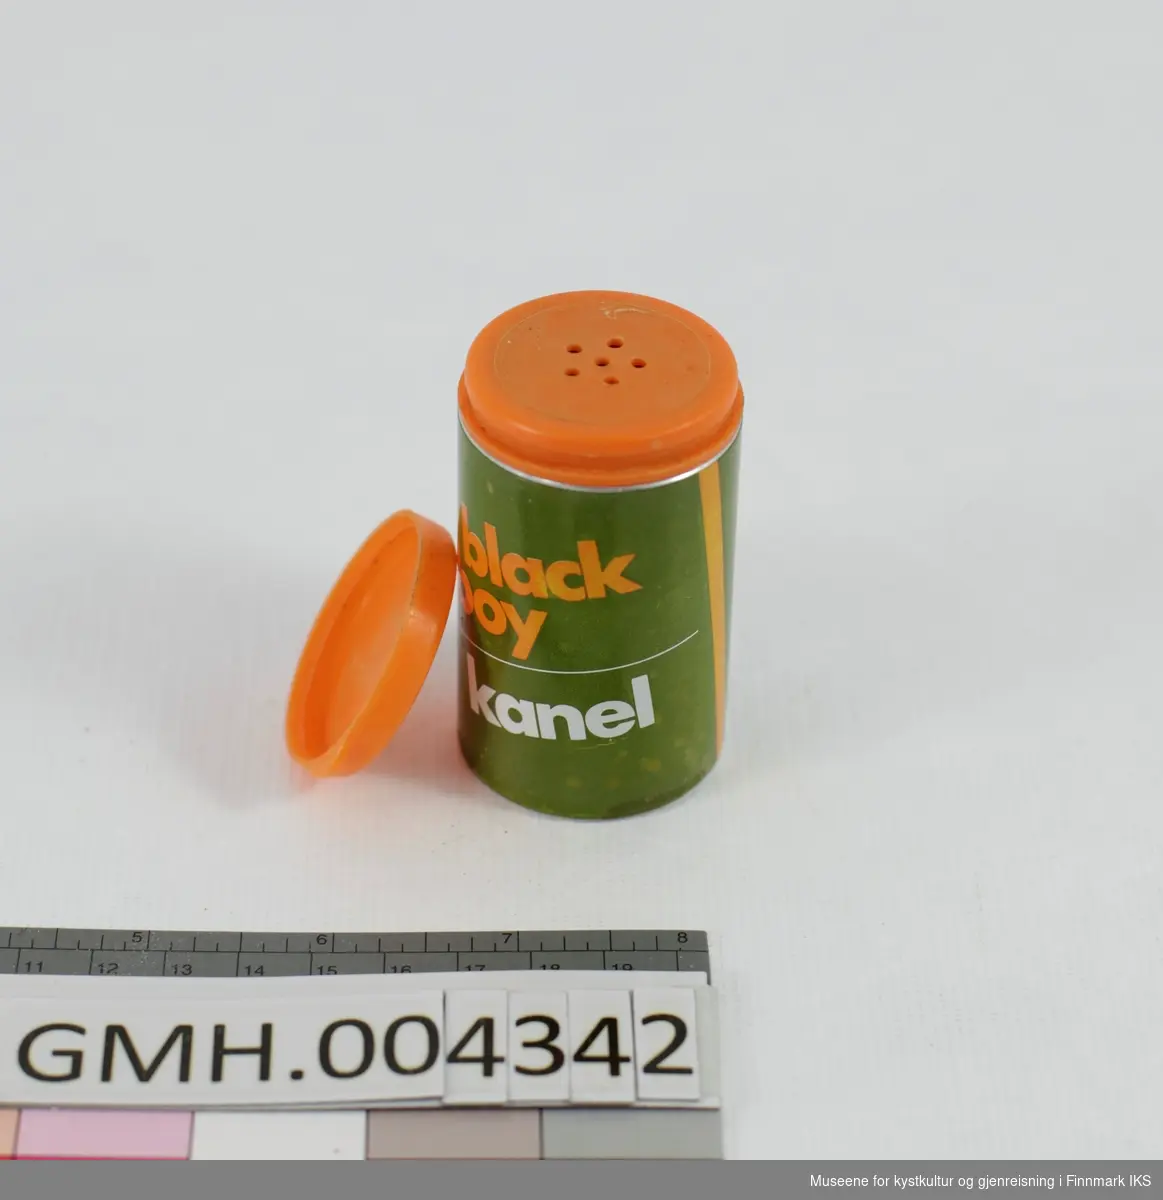 Den sylinderformede boksen er laget i metall og har en olivengrønn design med hvite og oransje bokstaver påtrykt. Lokket er av fleksibel, oransje plast og sitter på et fast lokk med strøhull i av samme material og farge. Emballasjen er tom.